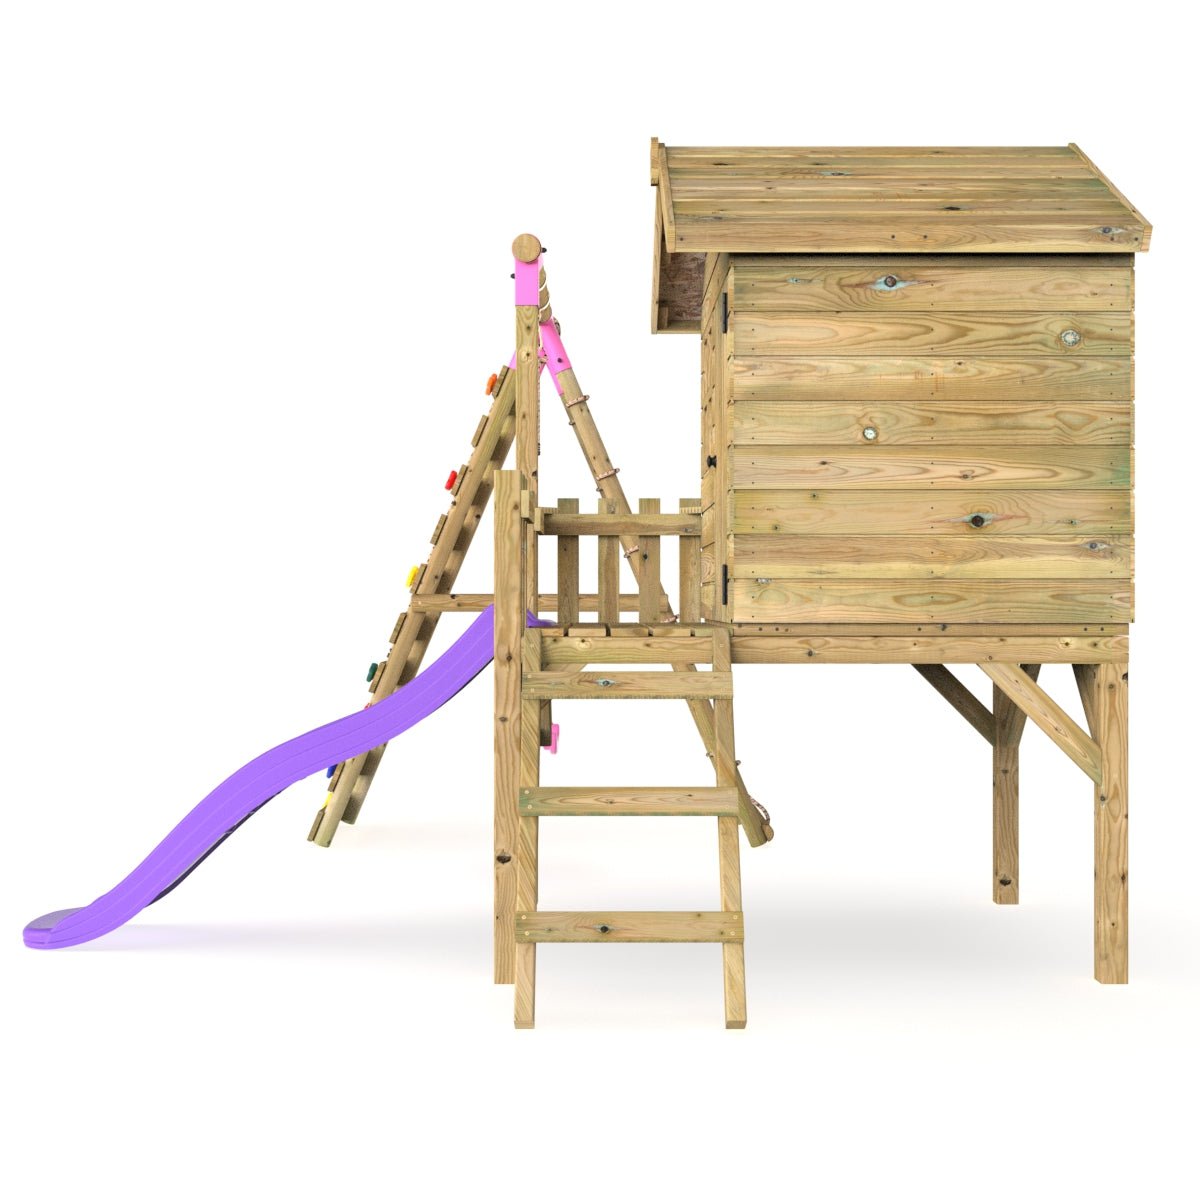 Rebo Orchard 4FT Wooden Playhouse + Swings, Rock Wall, Deck & 6FT Slide – Solar Purple